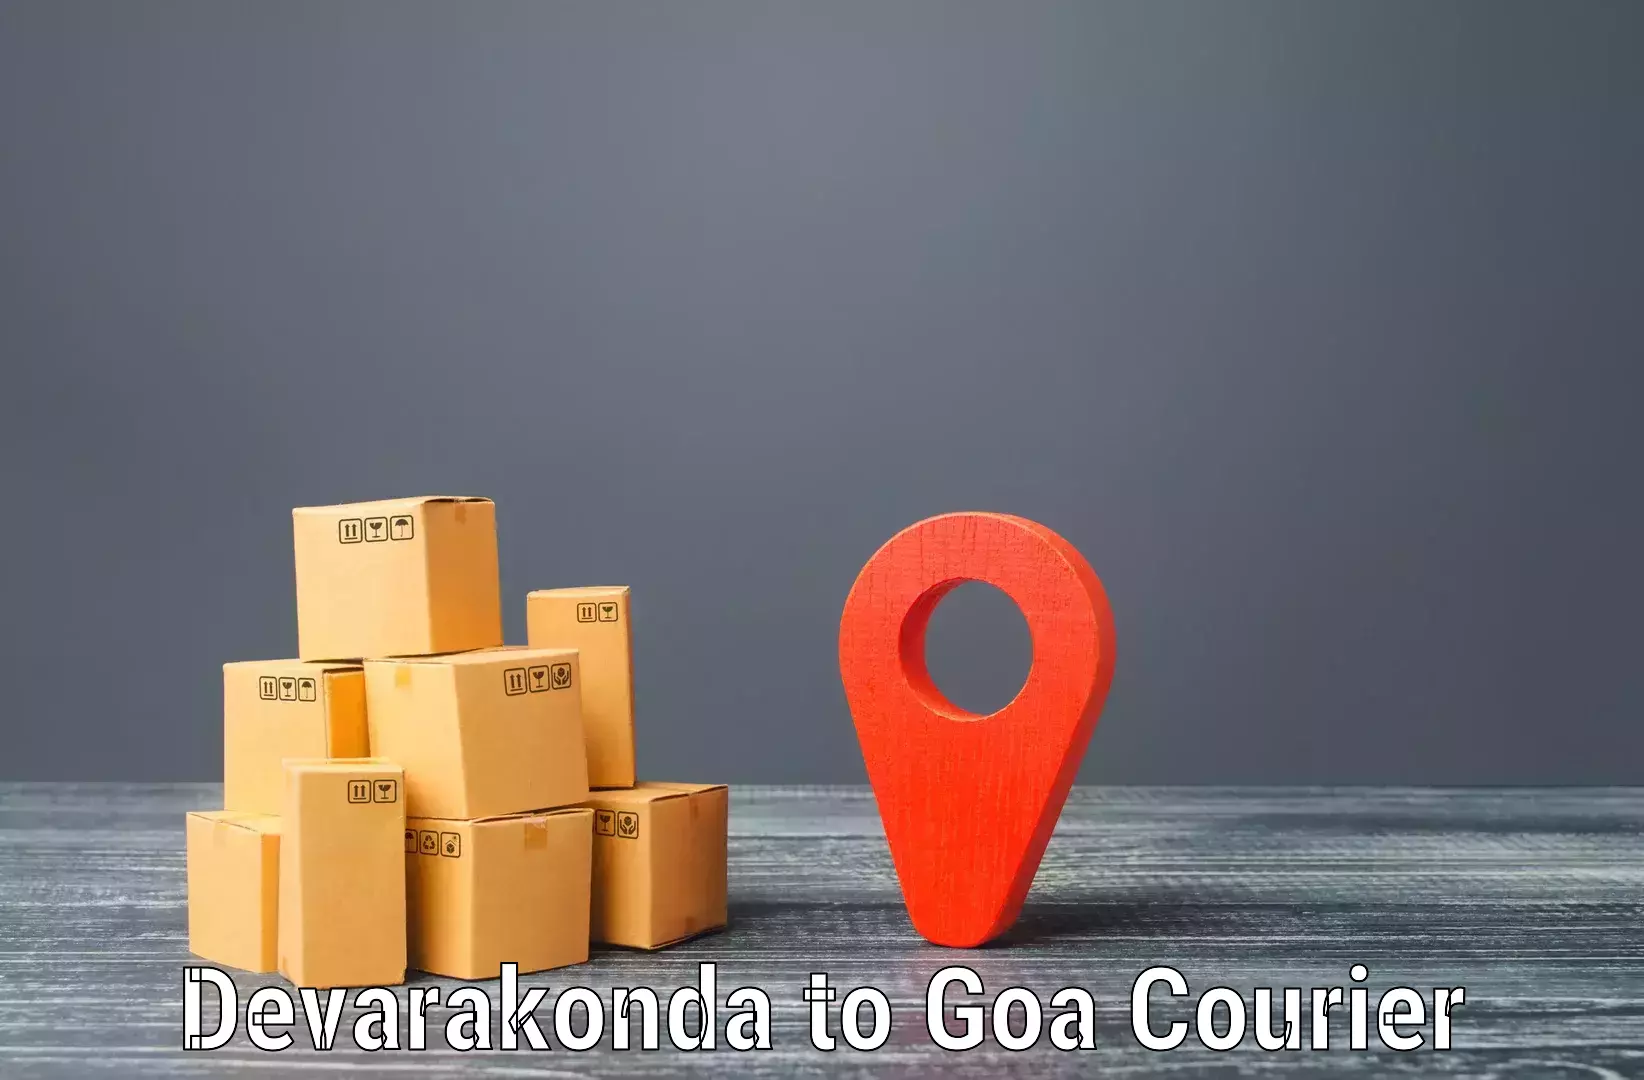 Professional delivery solutions in Devarakonda to Panaji